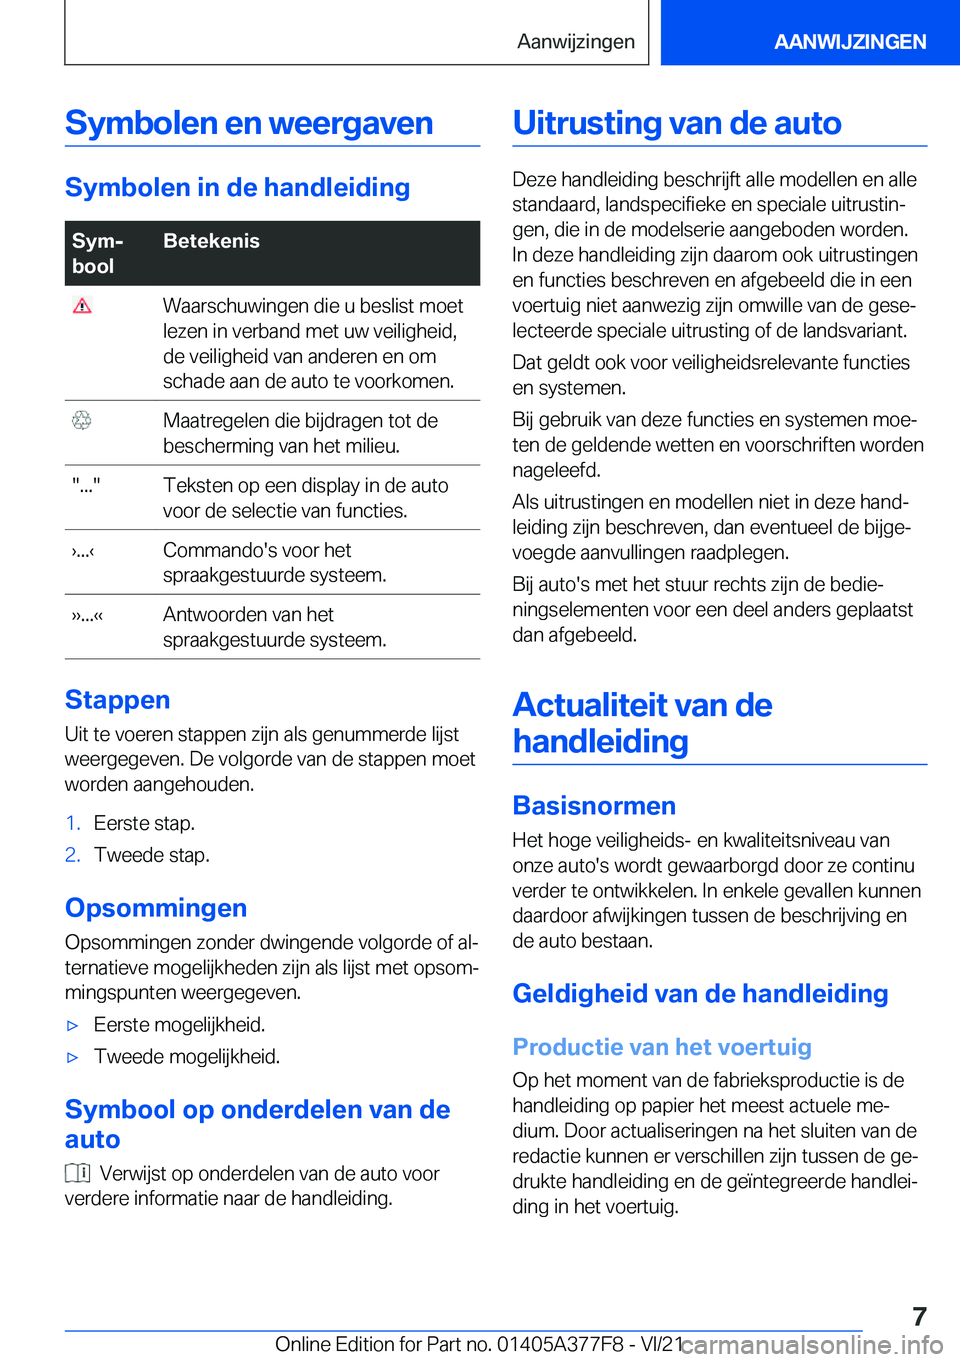 BMW X3 M 2022  Instructieboekjes (in Dutch) �S�y�m�b�o�l�e�n��e�n��w�e�e�r�g�a�v�e�n
�S�y�m�b�o�l�e�n��i�n��d�e��h�a�n�d�l�e�i�d�i�n�g
�S�y�mj
�b�o�o�l�B�e�t�e�k�e�n�i�s��W�a�a�r�s�c�h�u�w�i�n�g�e�n��d�i�e��u��b�e�s�l�i�s�t��m�o�e�t
